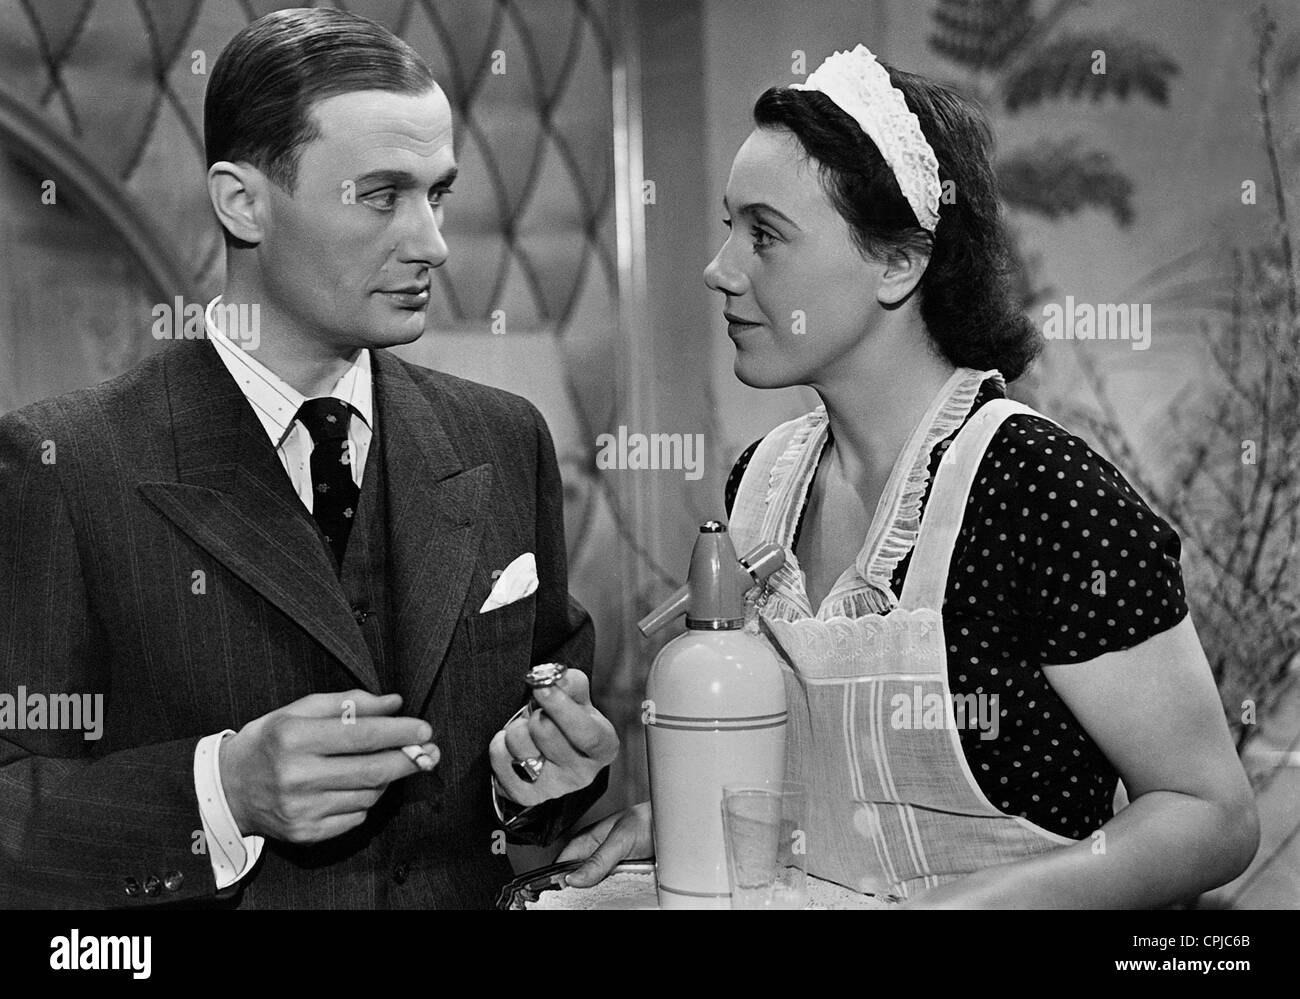 Rudolf Fernau e Ursula Herking in 'Il sipario', 1939 Foto Stock